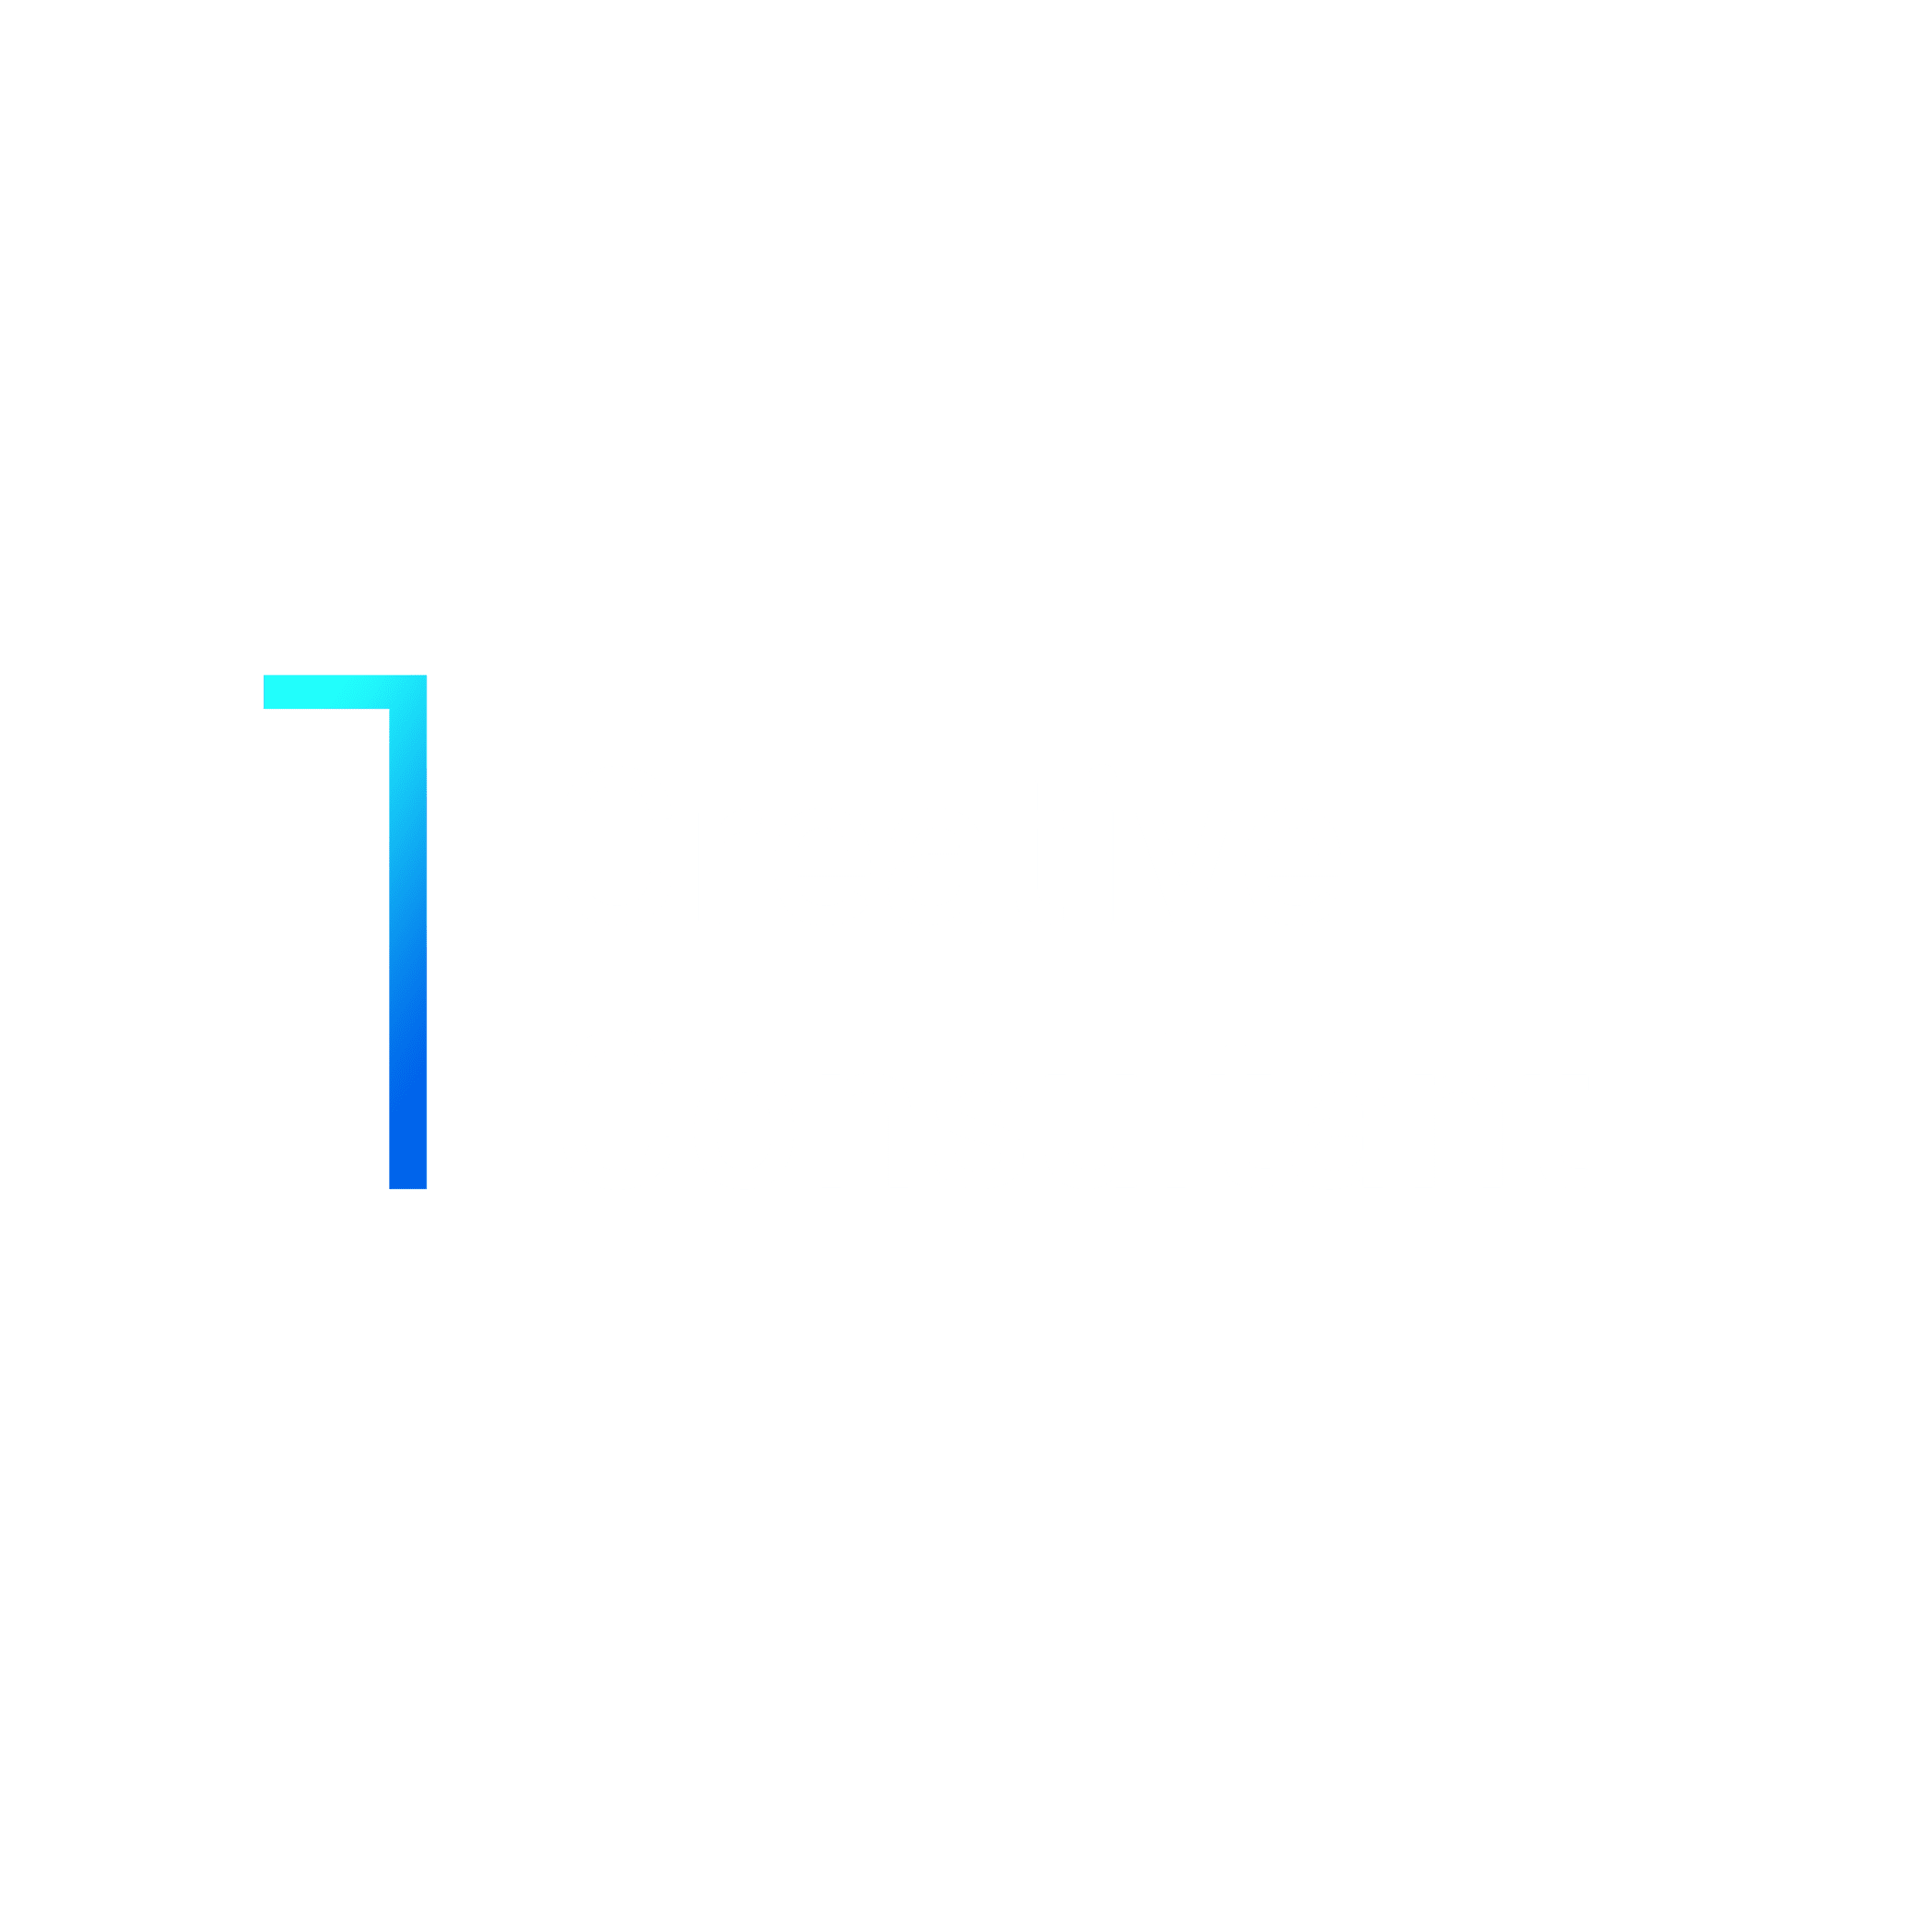 1 Creative Consultant logo